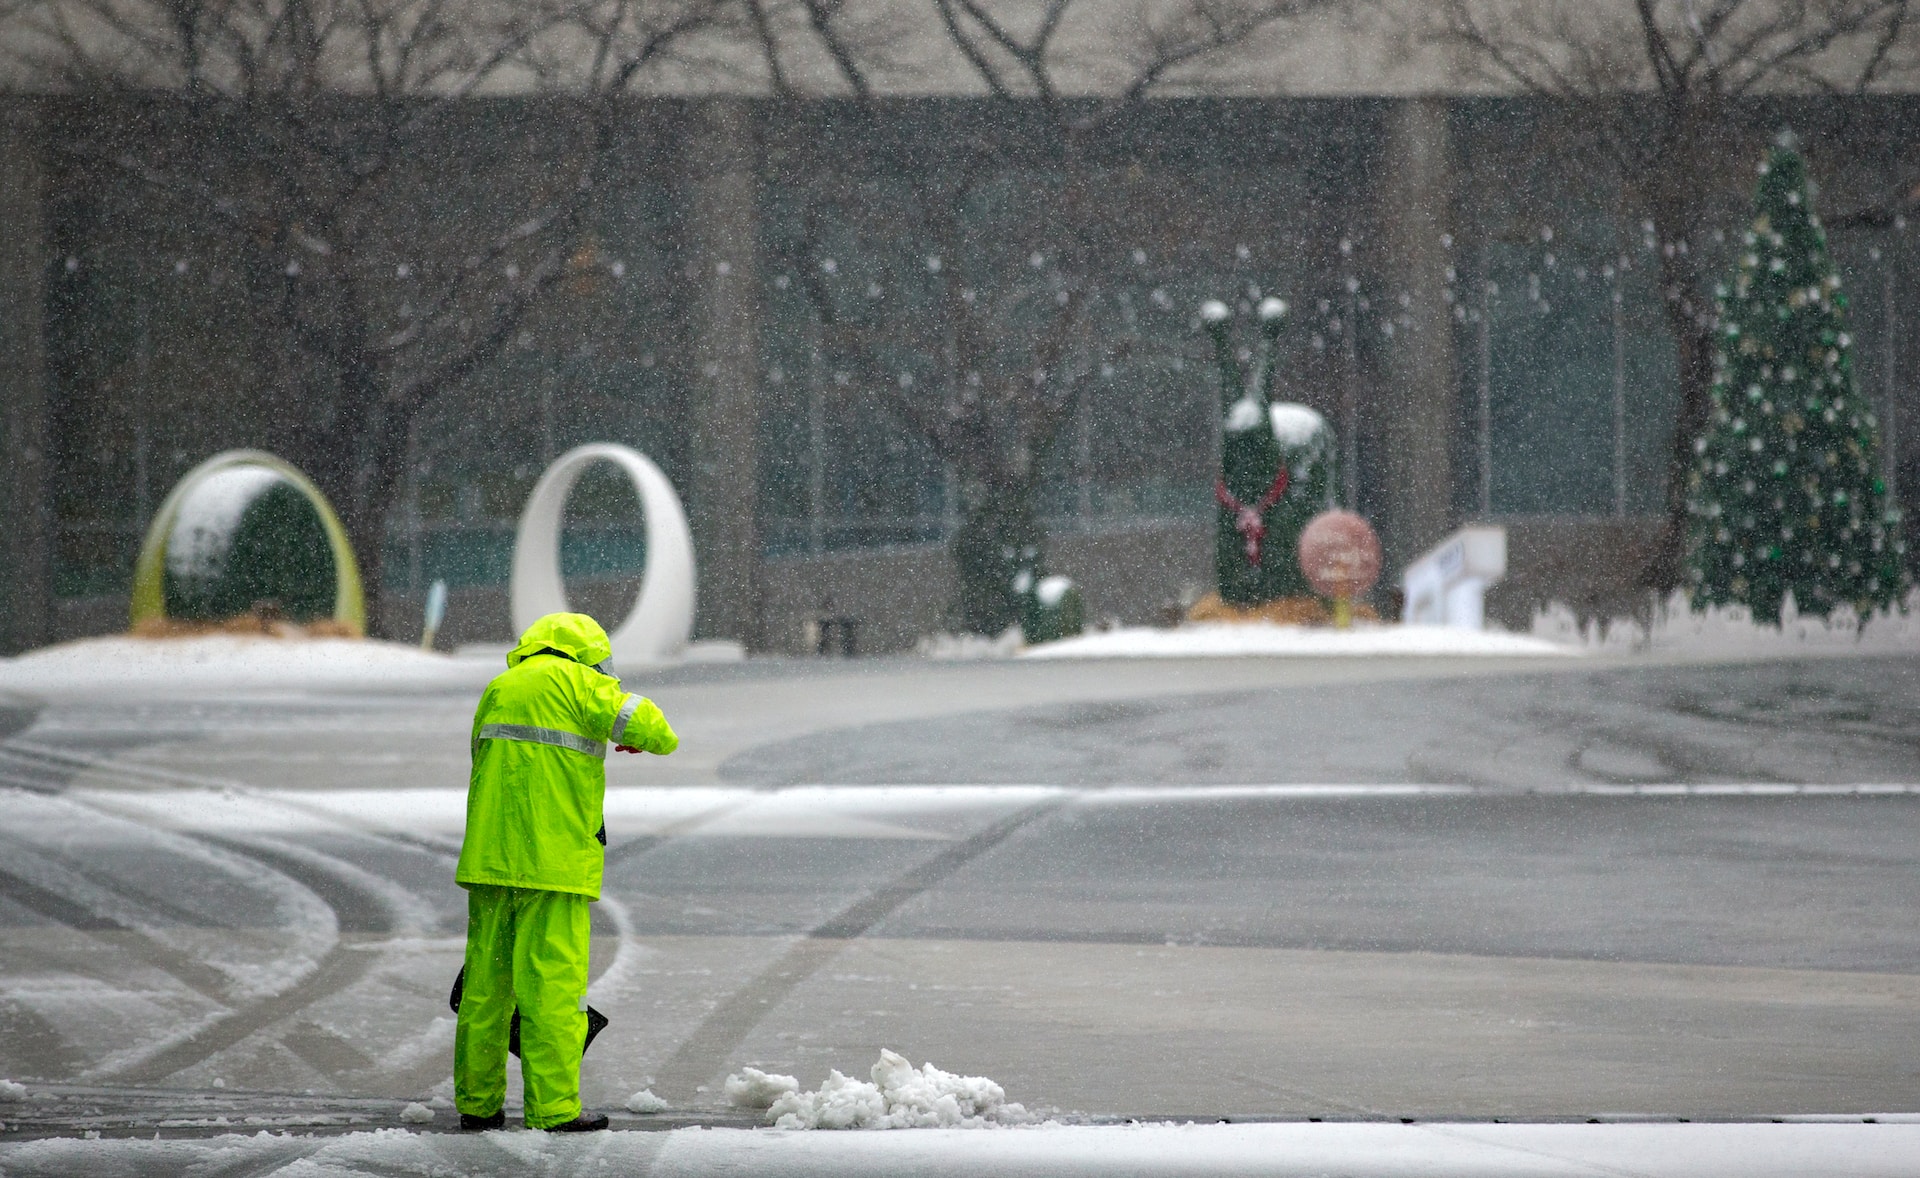 Un treballador de la neteja retirant neu d'una carretera